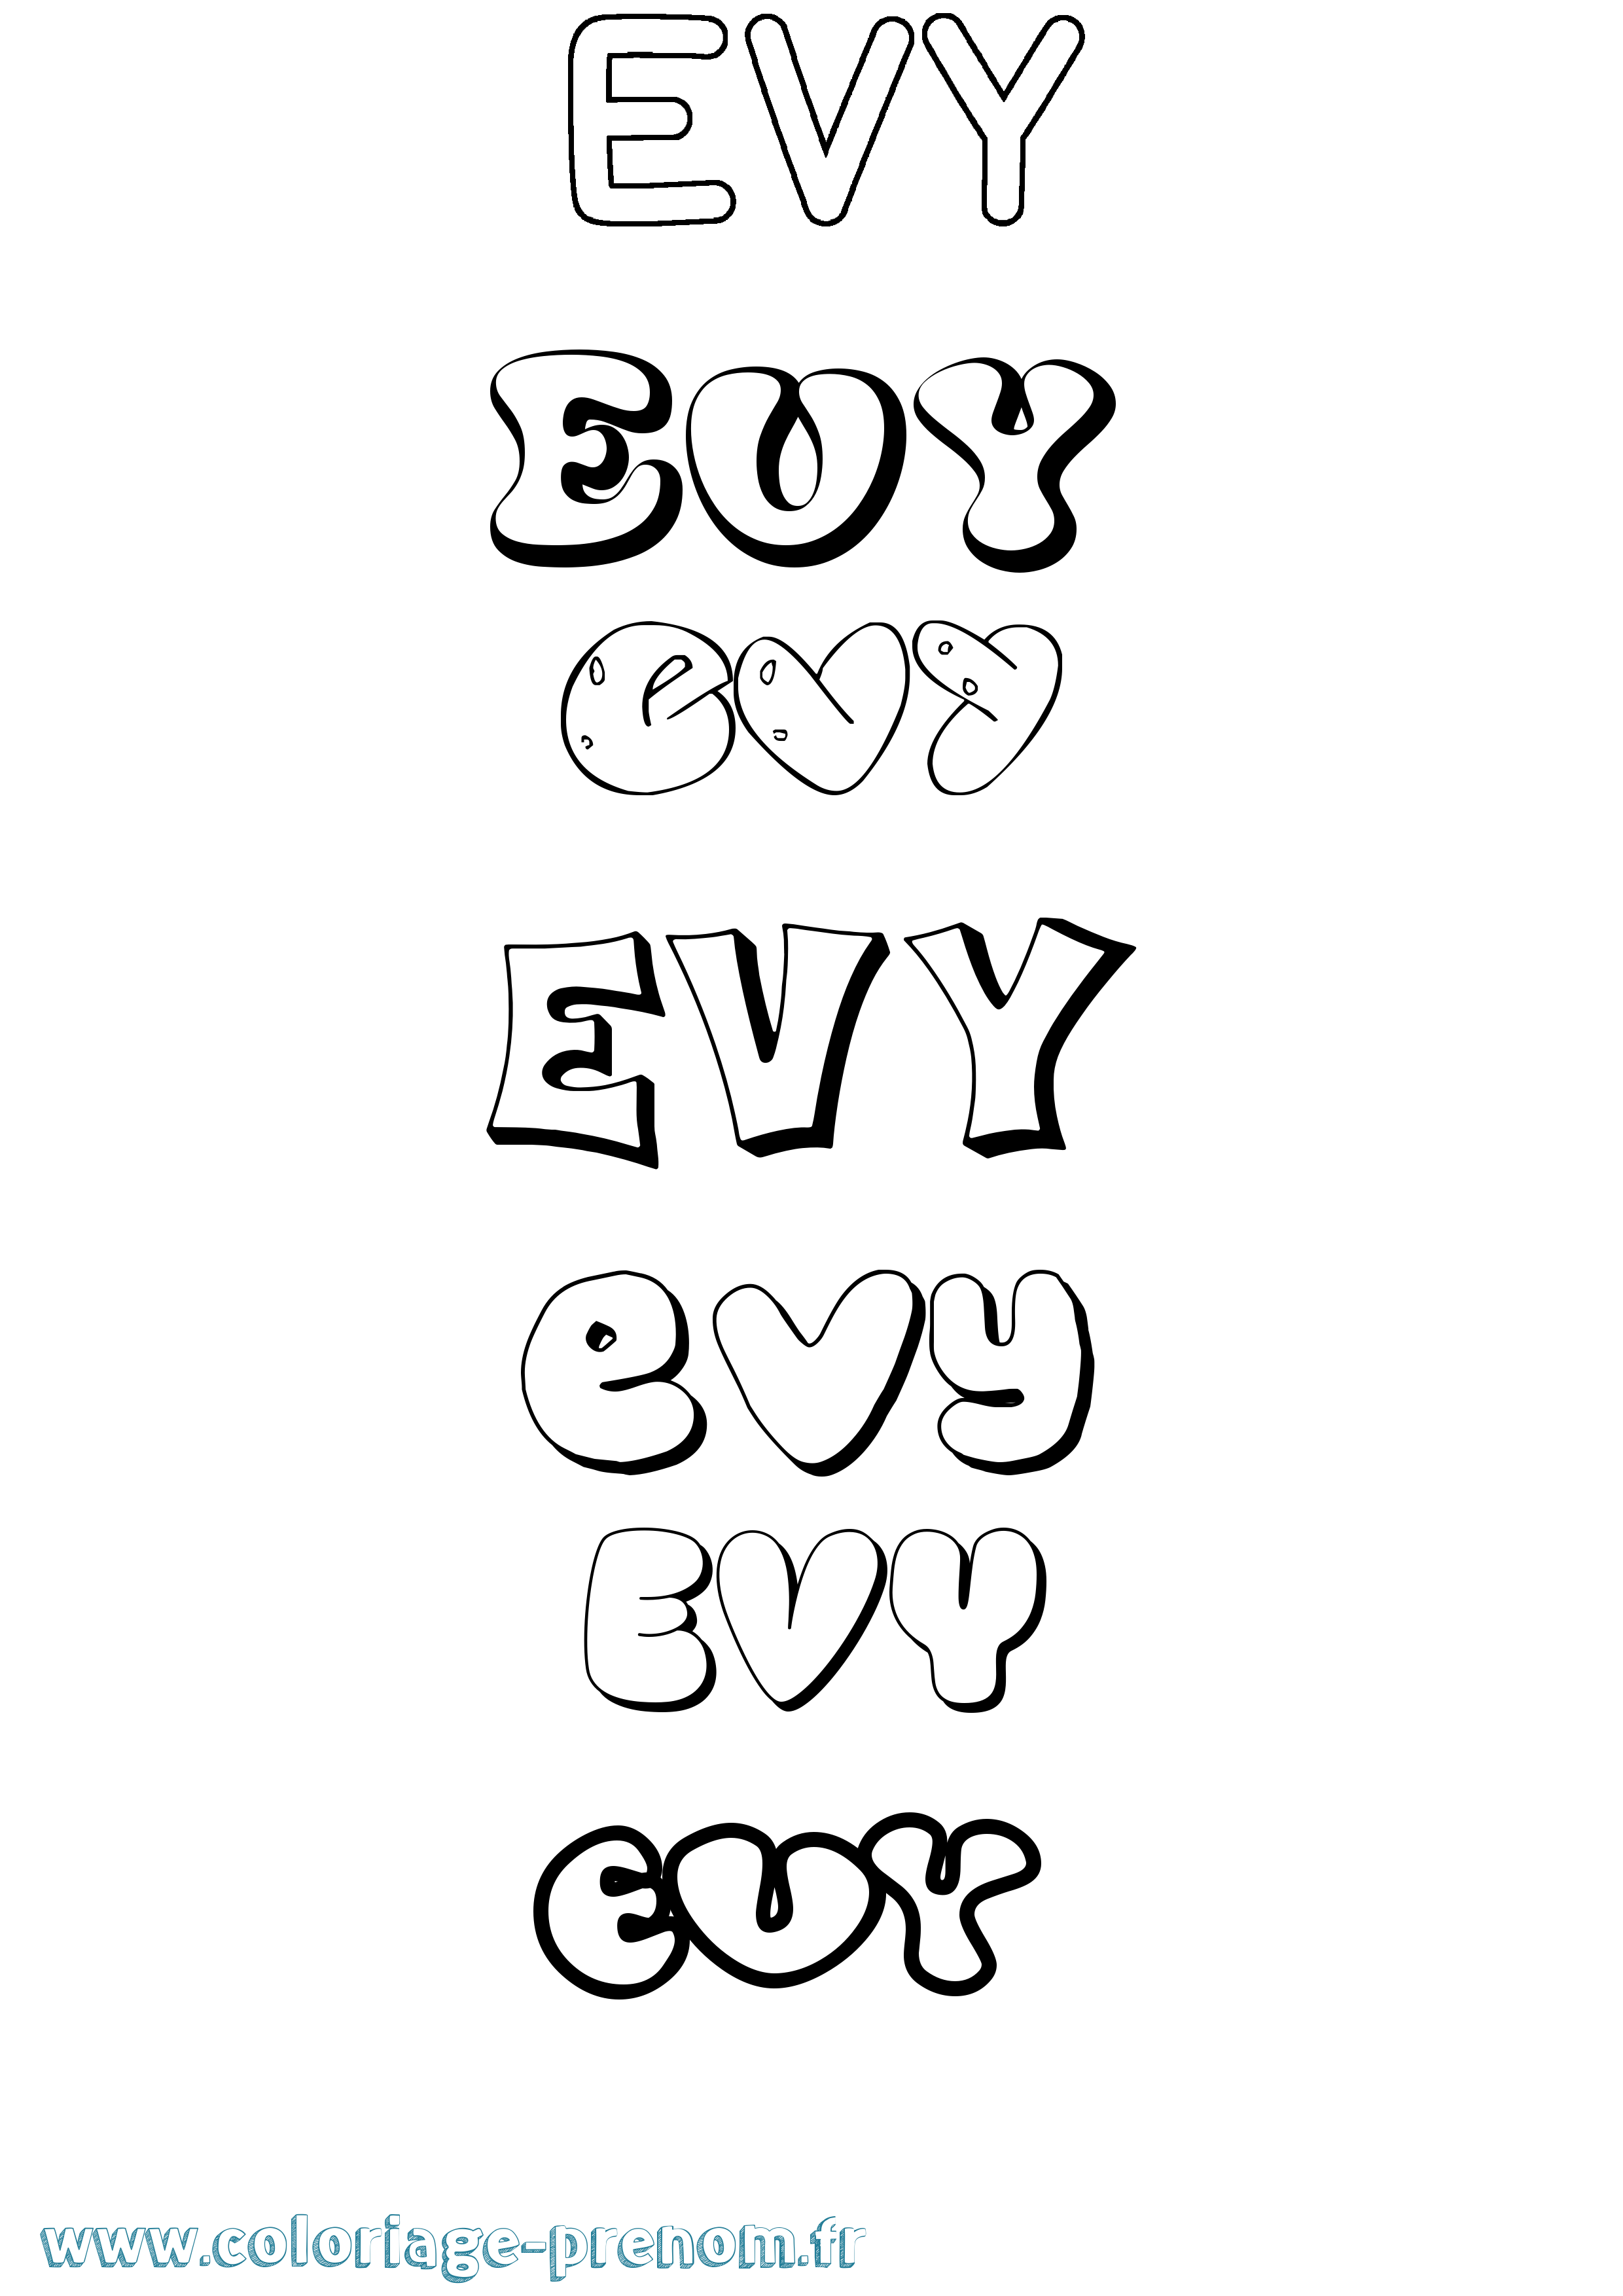 Coloriage prénom Evy